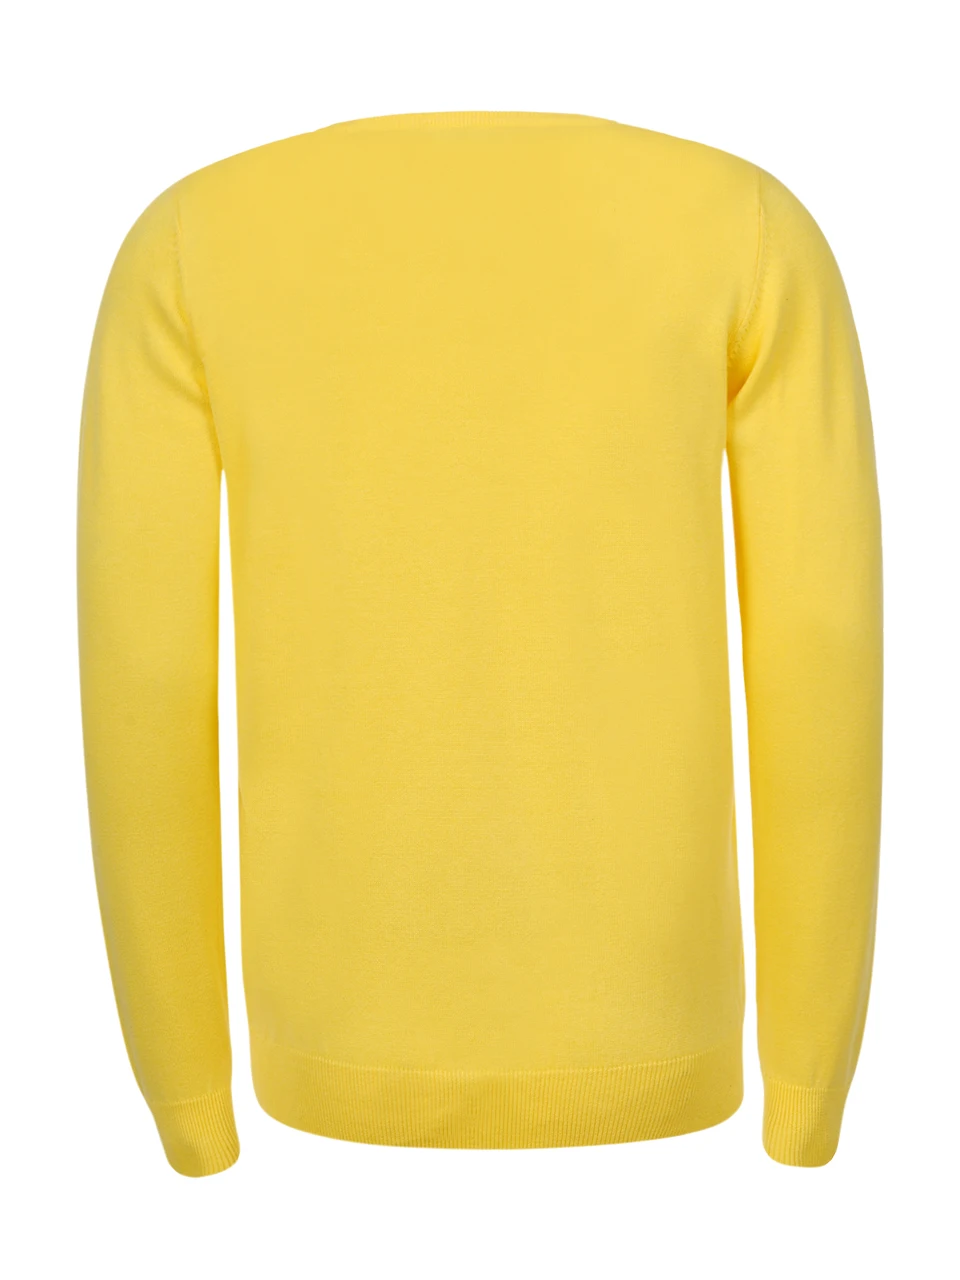 GLO-STORY 2019 Для мужчин, с круглым вырезом Пуловеры, свитеры Для мужчин тянуть мужской свитер Топы MMY-7213